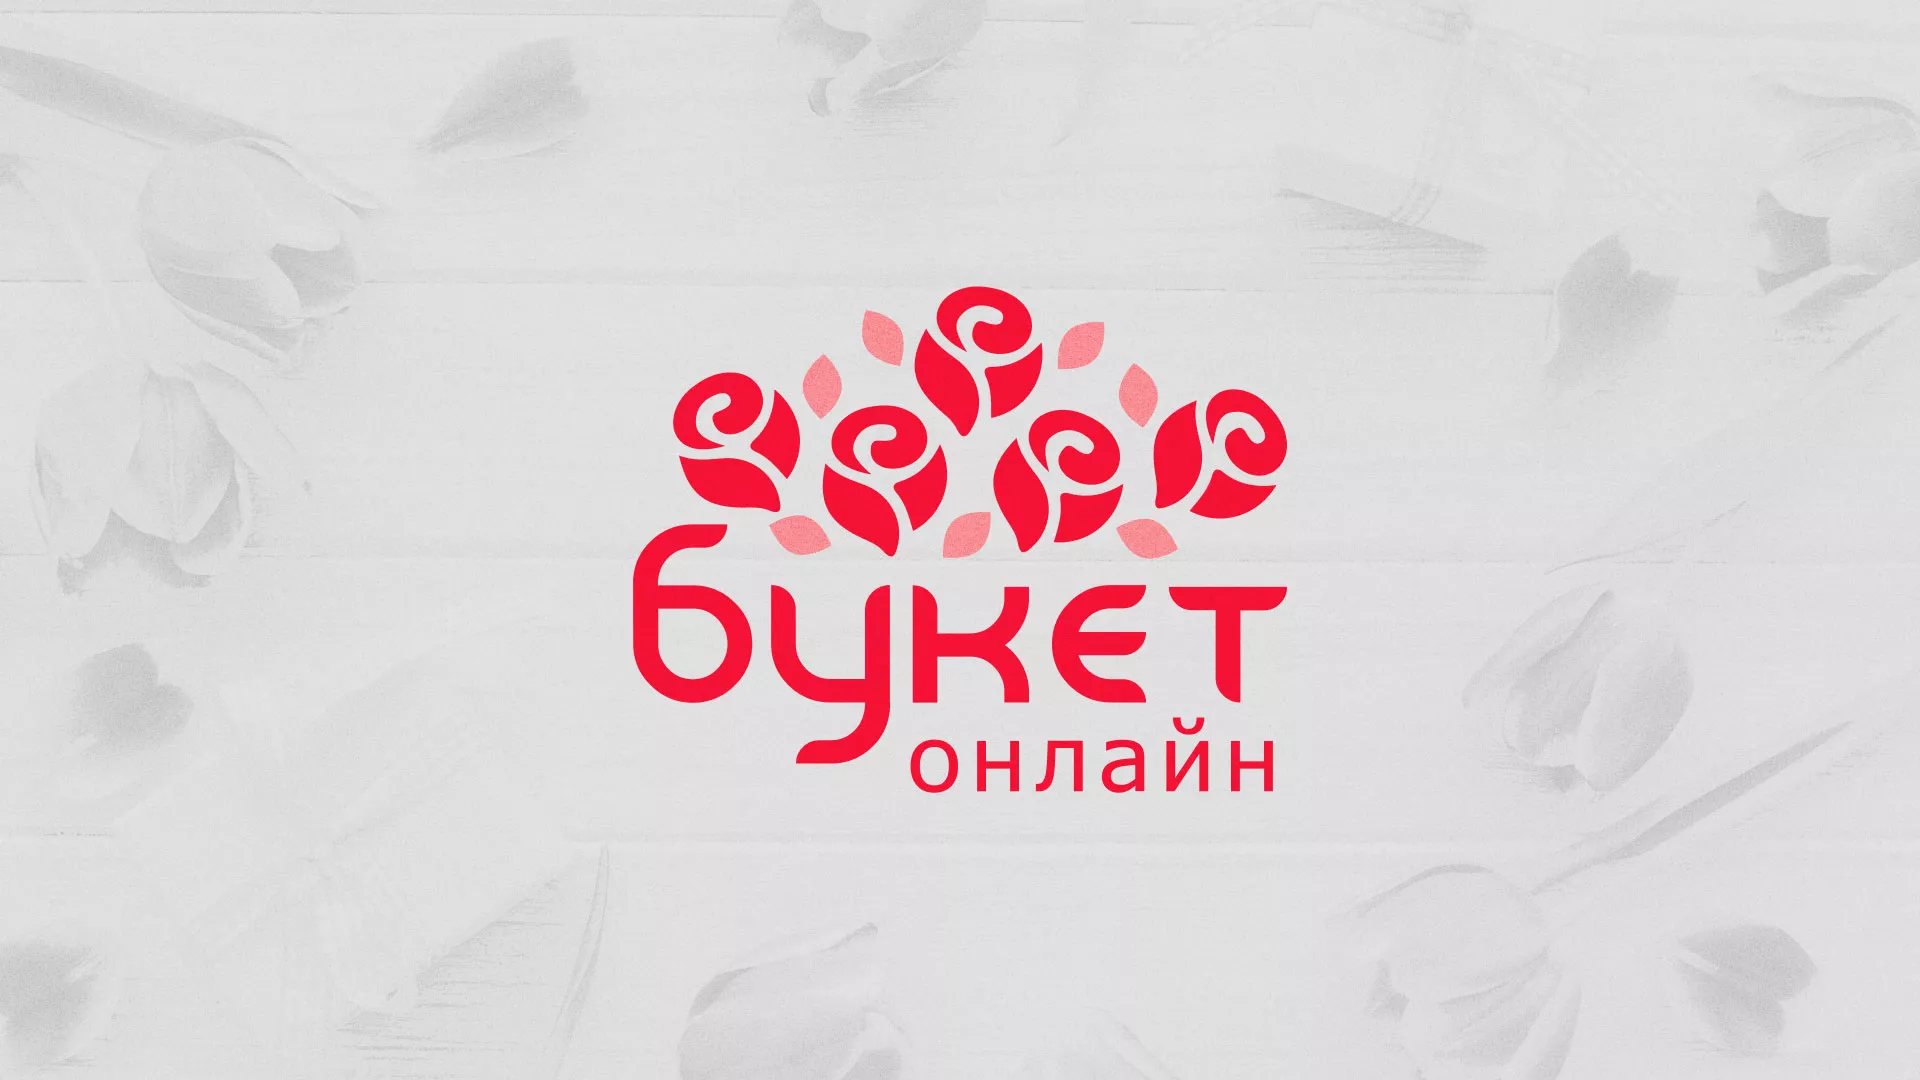 Создание интернет-магазина «Букет-онлайн» по цветам в Костомукше